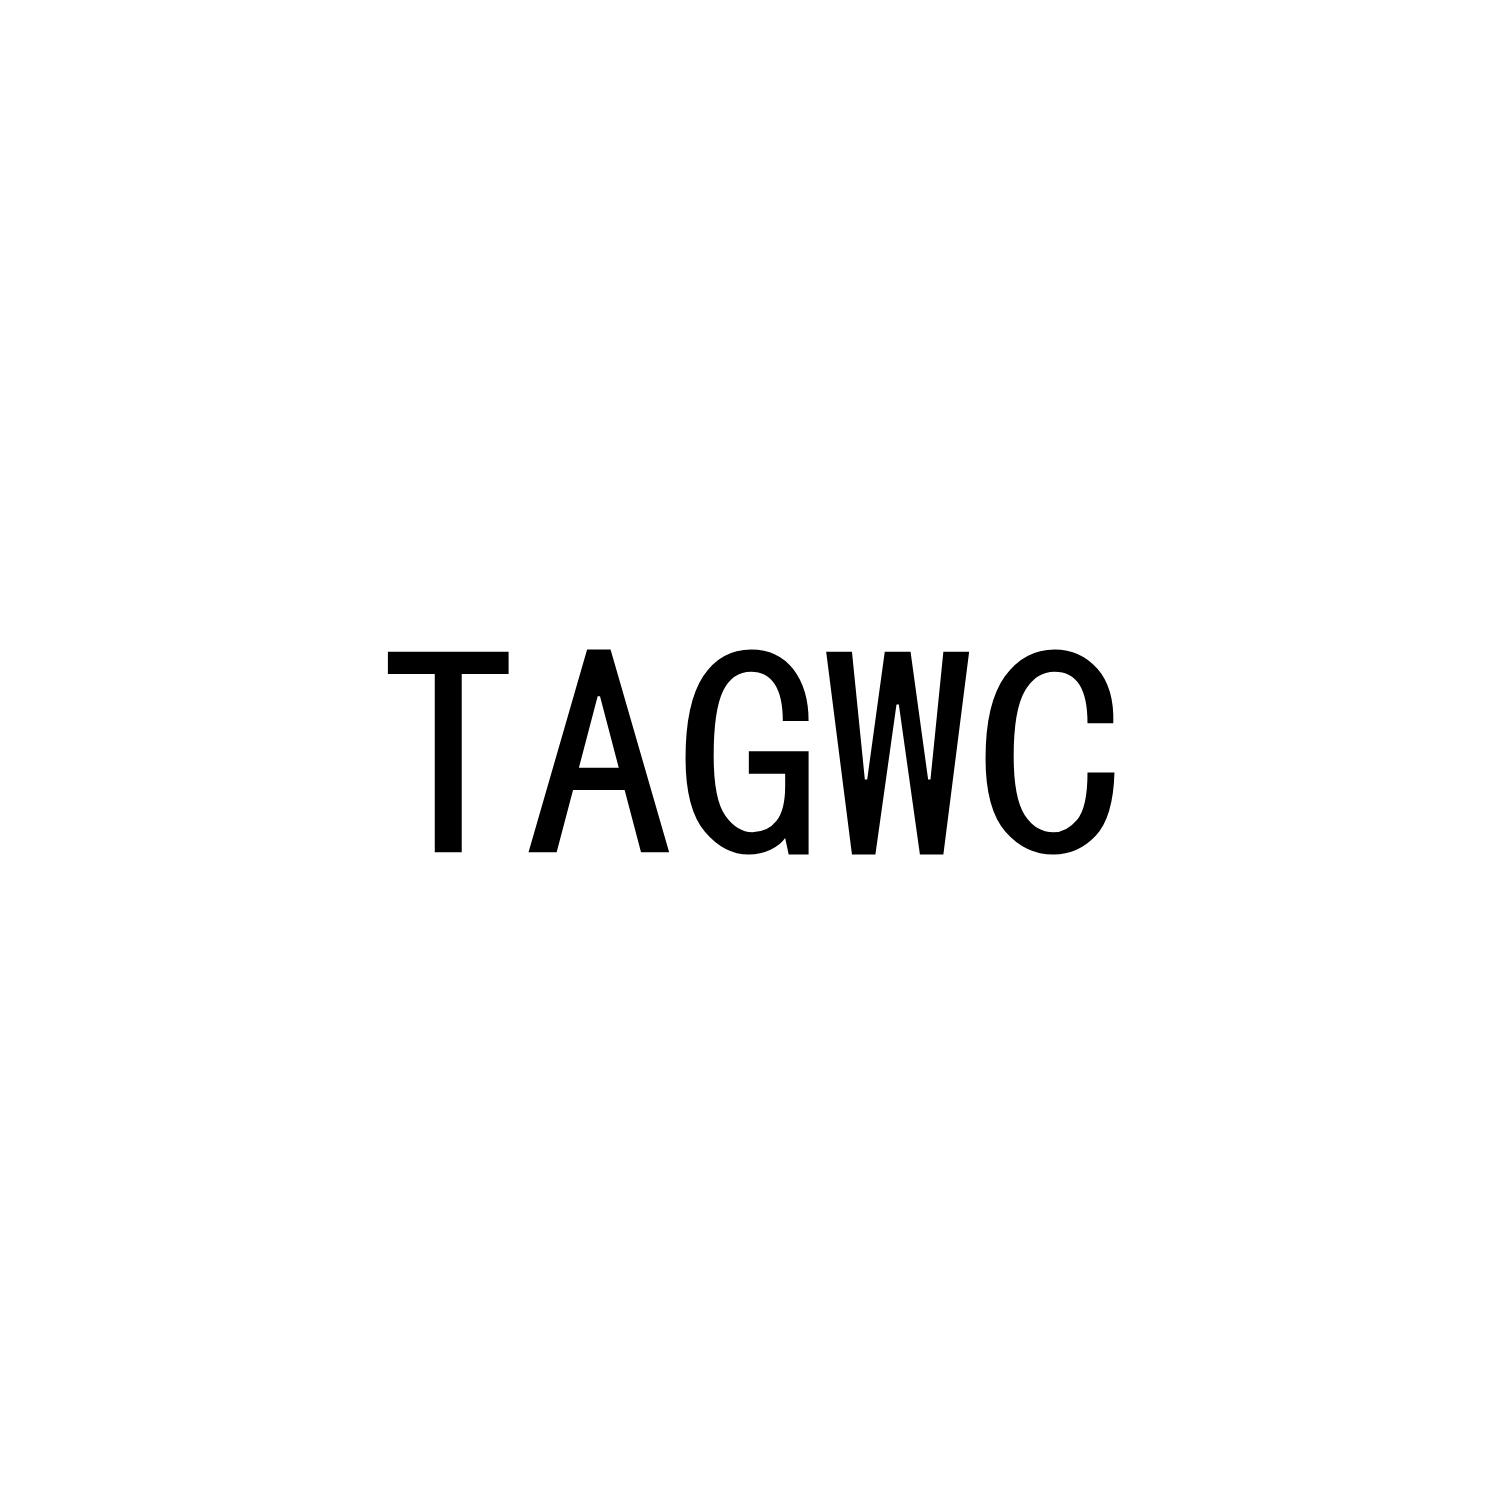 TAGWC